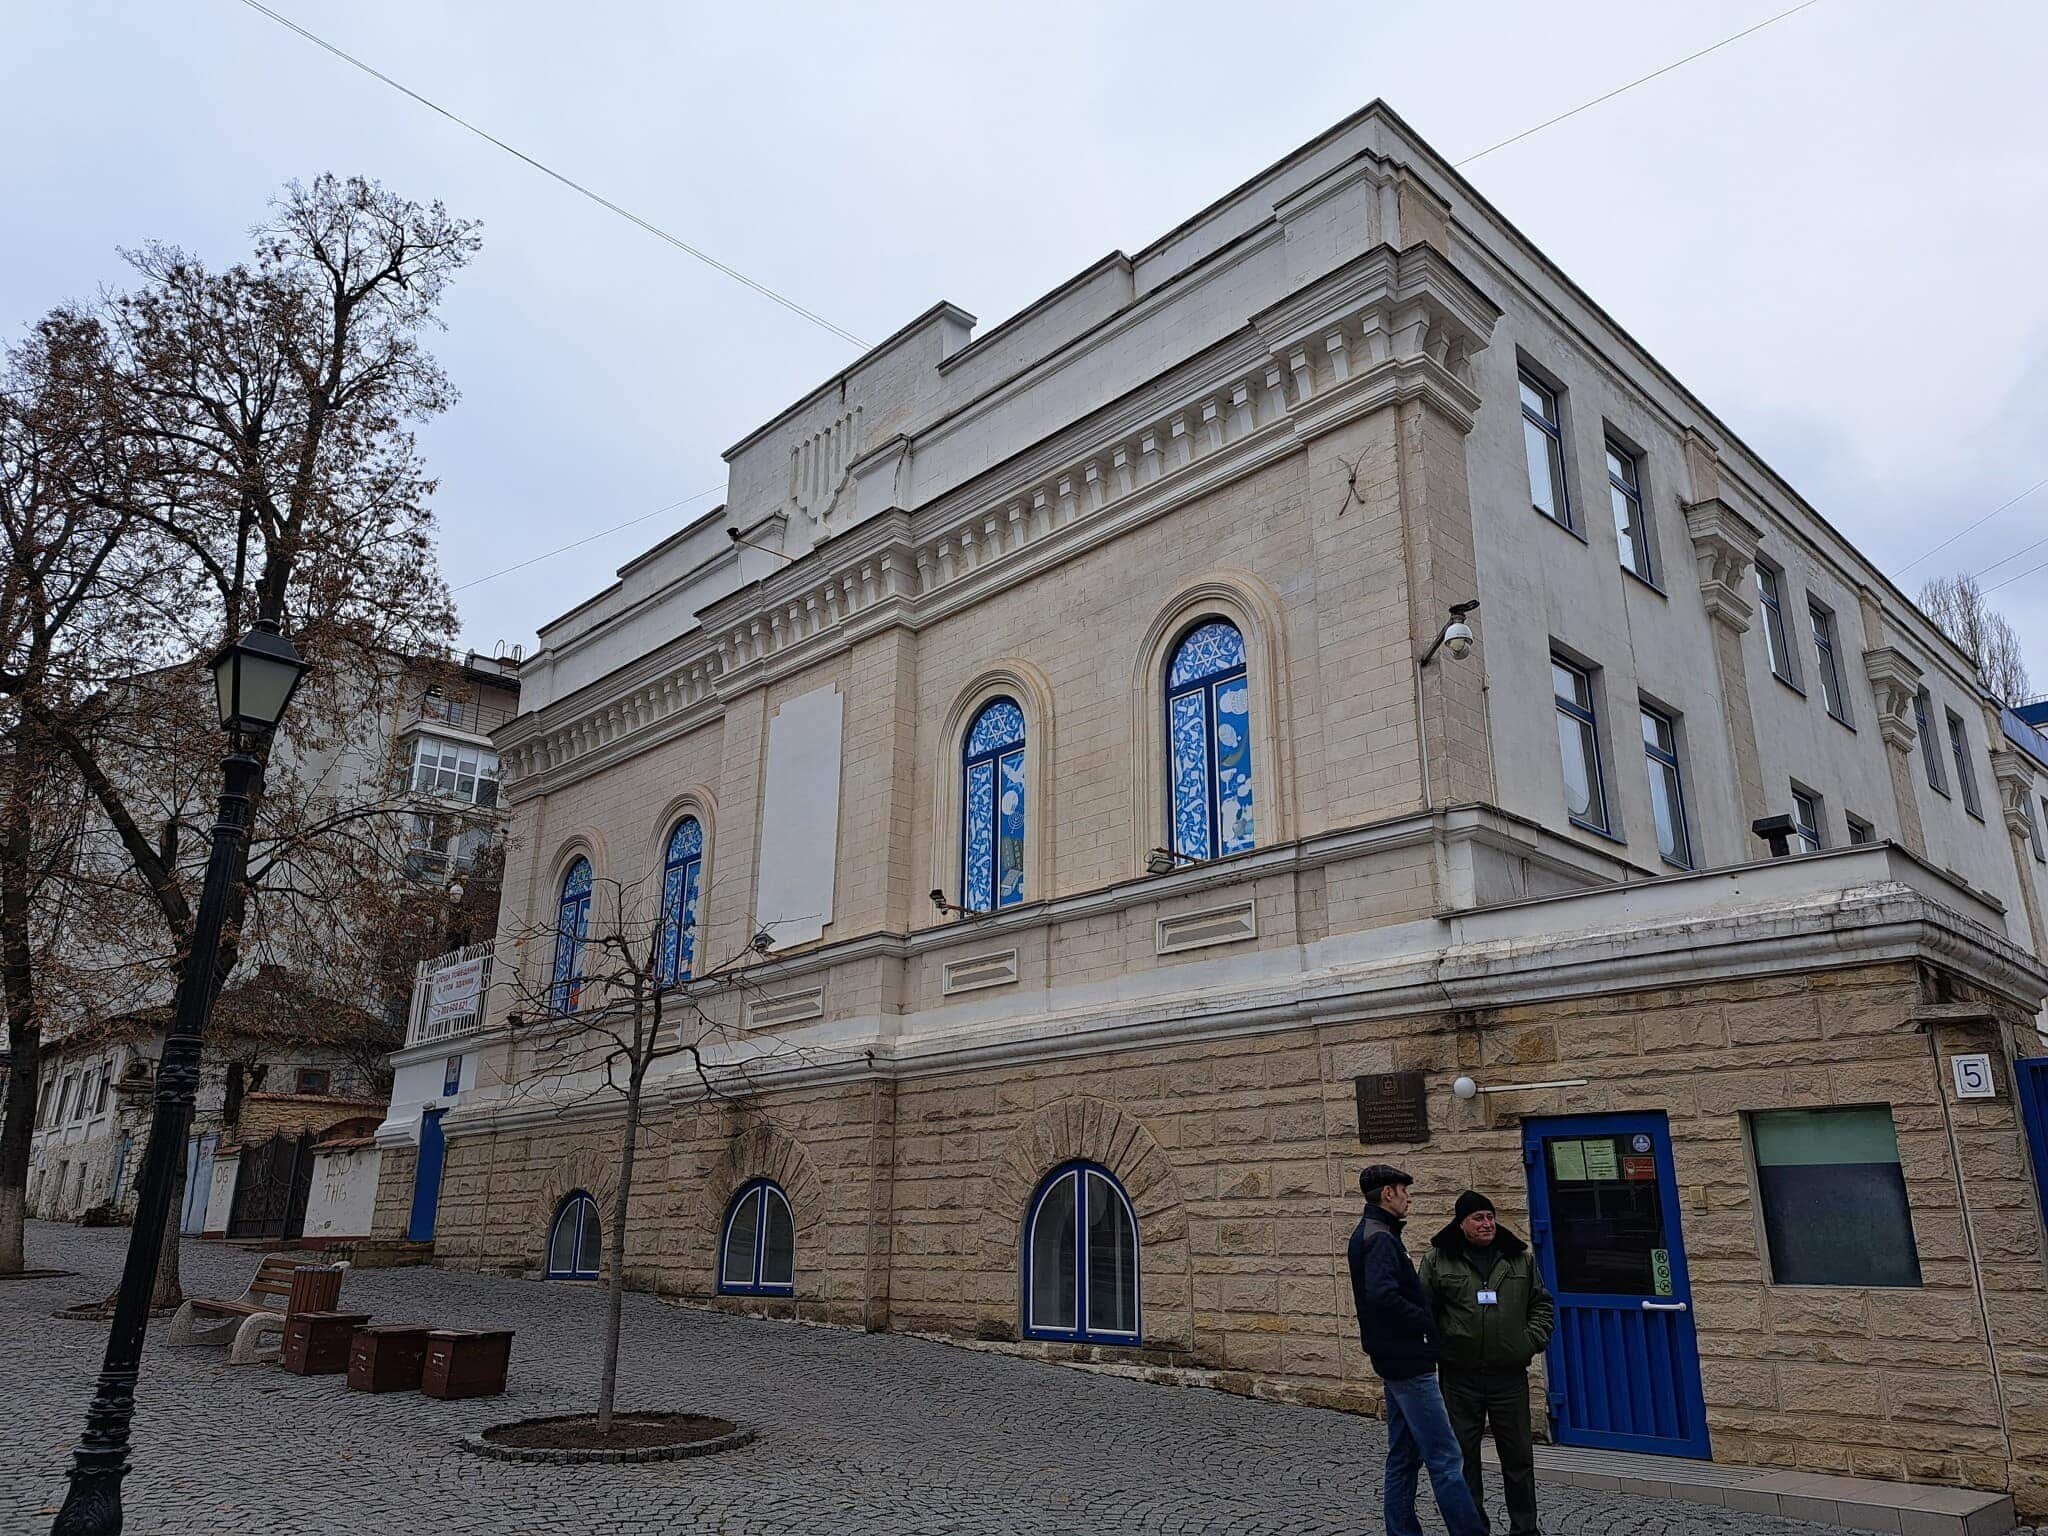 מרכז הקהילה היהודית בקישינב, מולדובה, 20 בנובמבר 2022 (צילום: יהודה ארי גרוס)